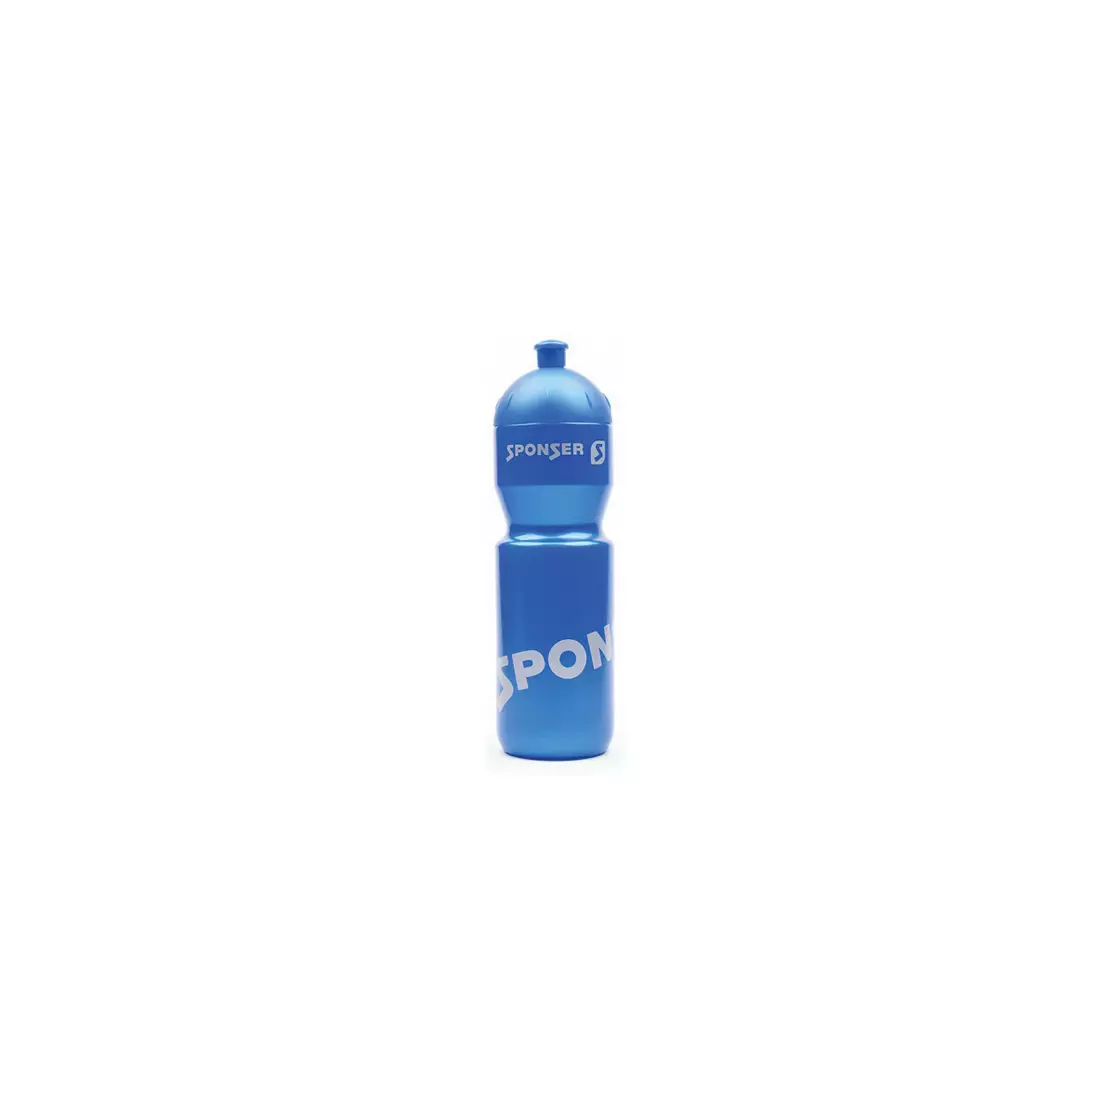 SPONSER Fahrrad Wasserflasche FARBIG 750 ml blue